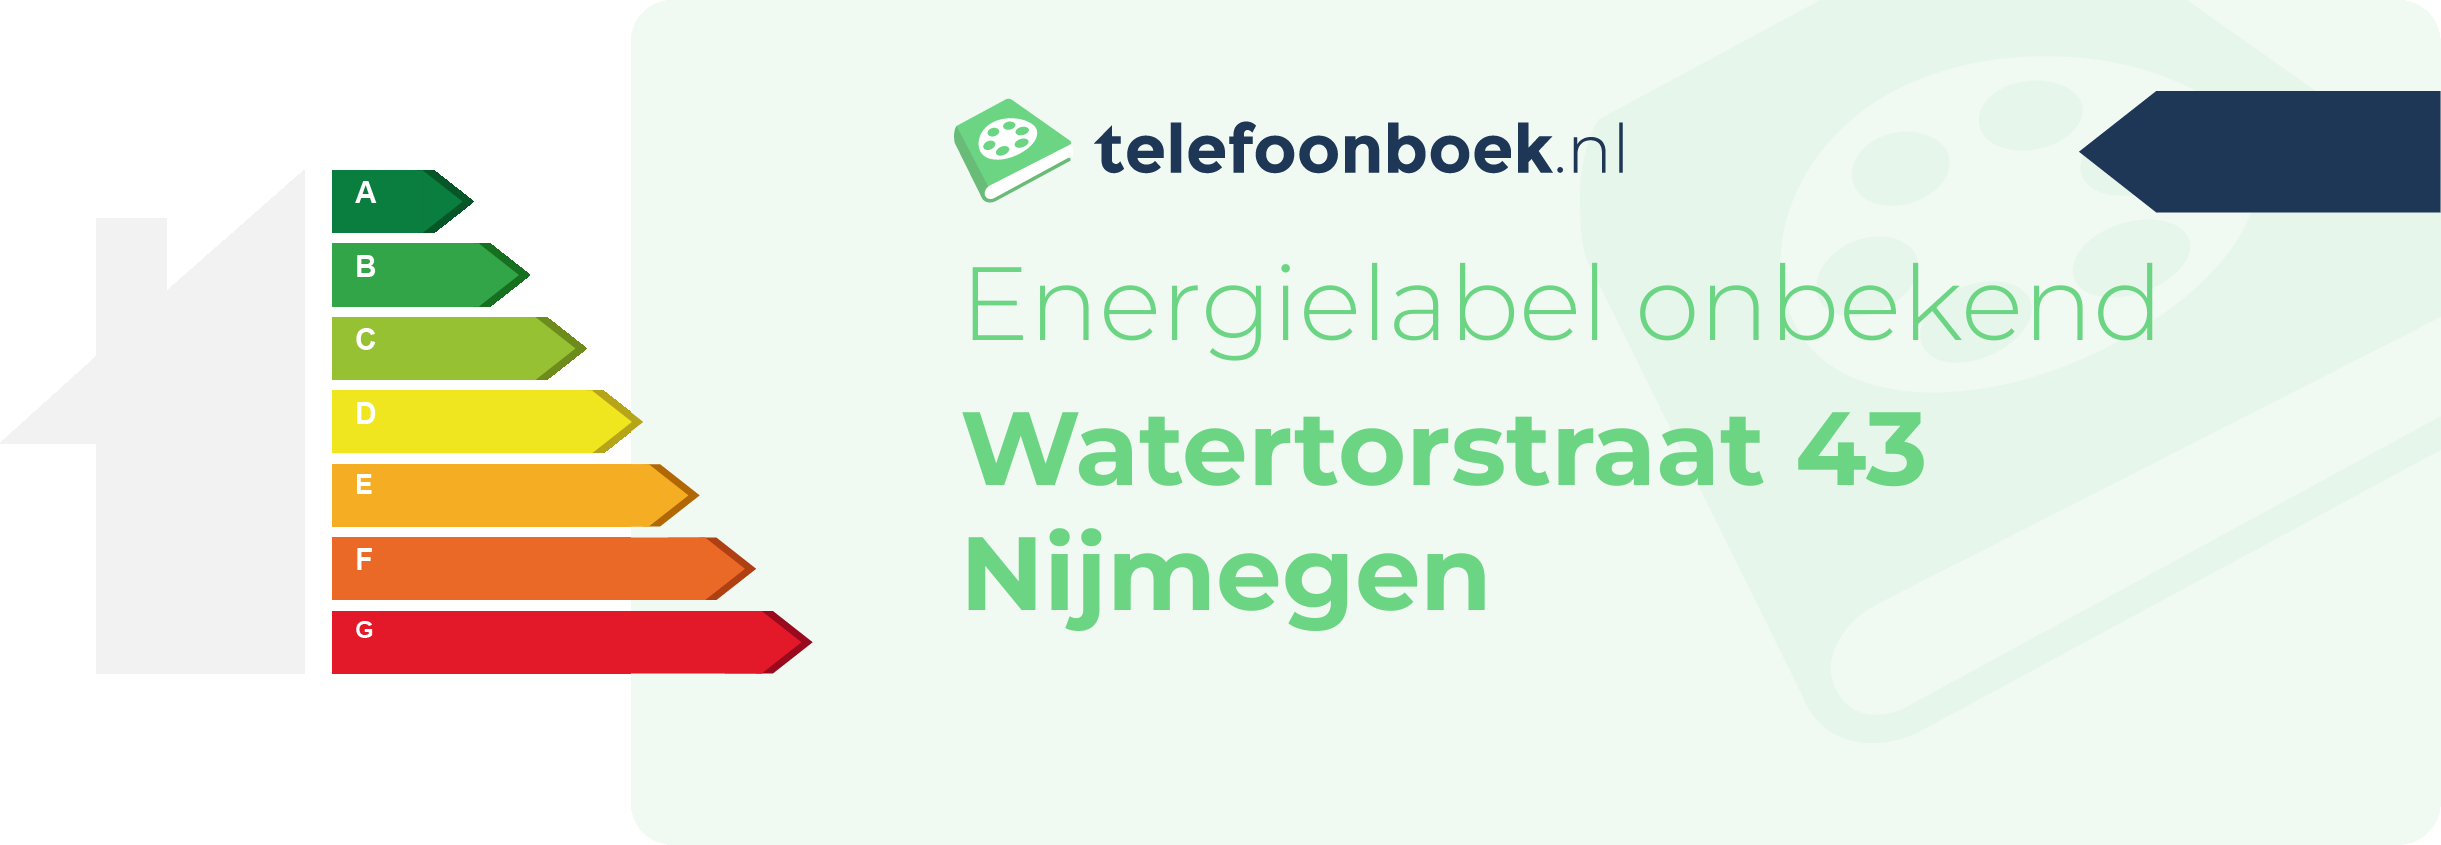 Energielabel Watertorstraat 43 Nijmegen